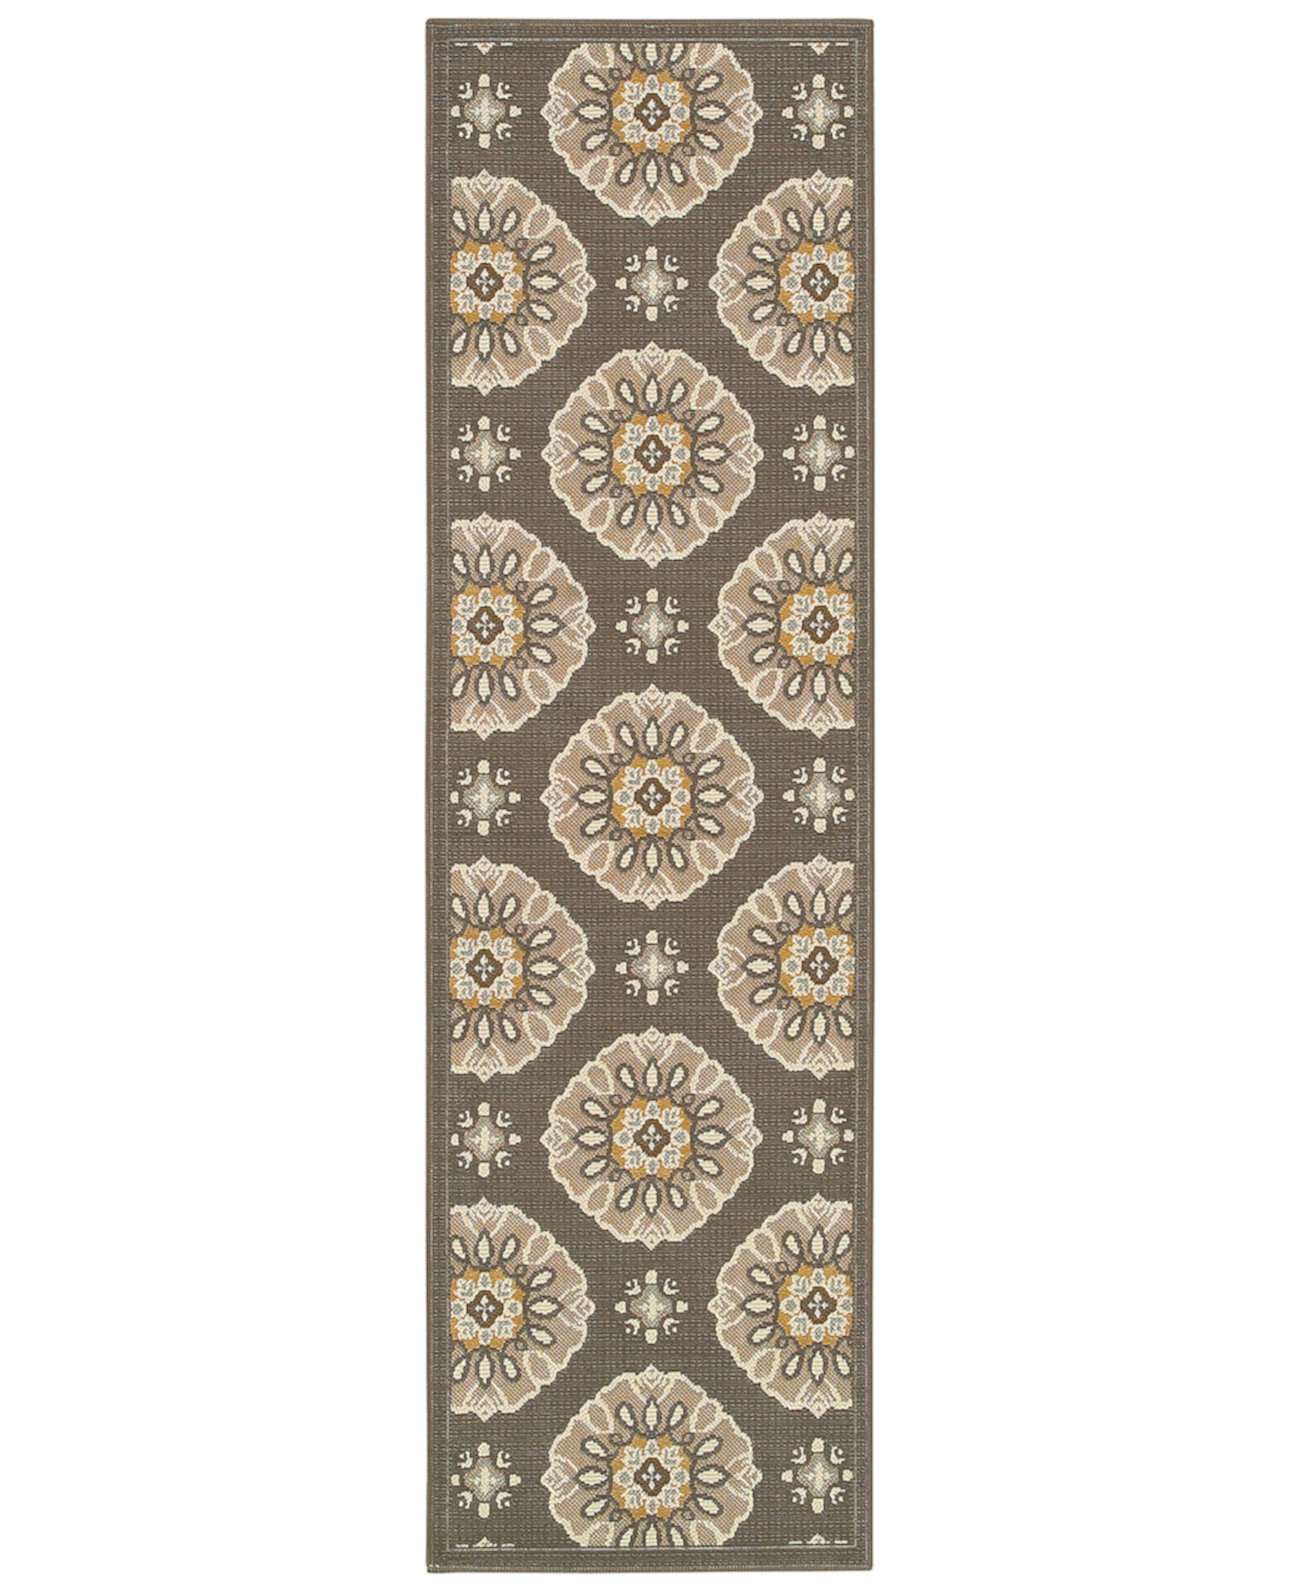 ЗАКРЫТИЕ! Bali 5863N Серый/Золотой коврик размером 7 футов 10 дюймов x 7 футов 10 дюймов для внутреннего и наружного использования. Oriental Weavers